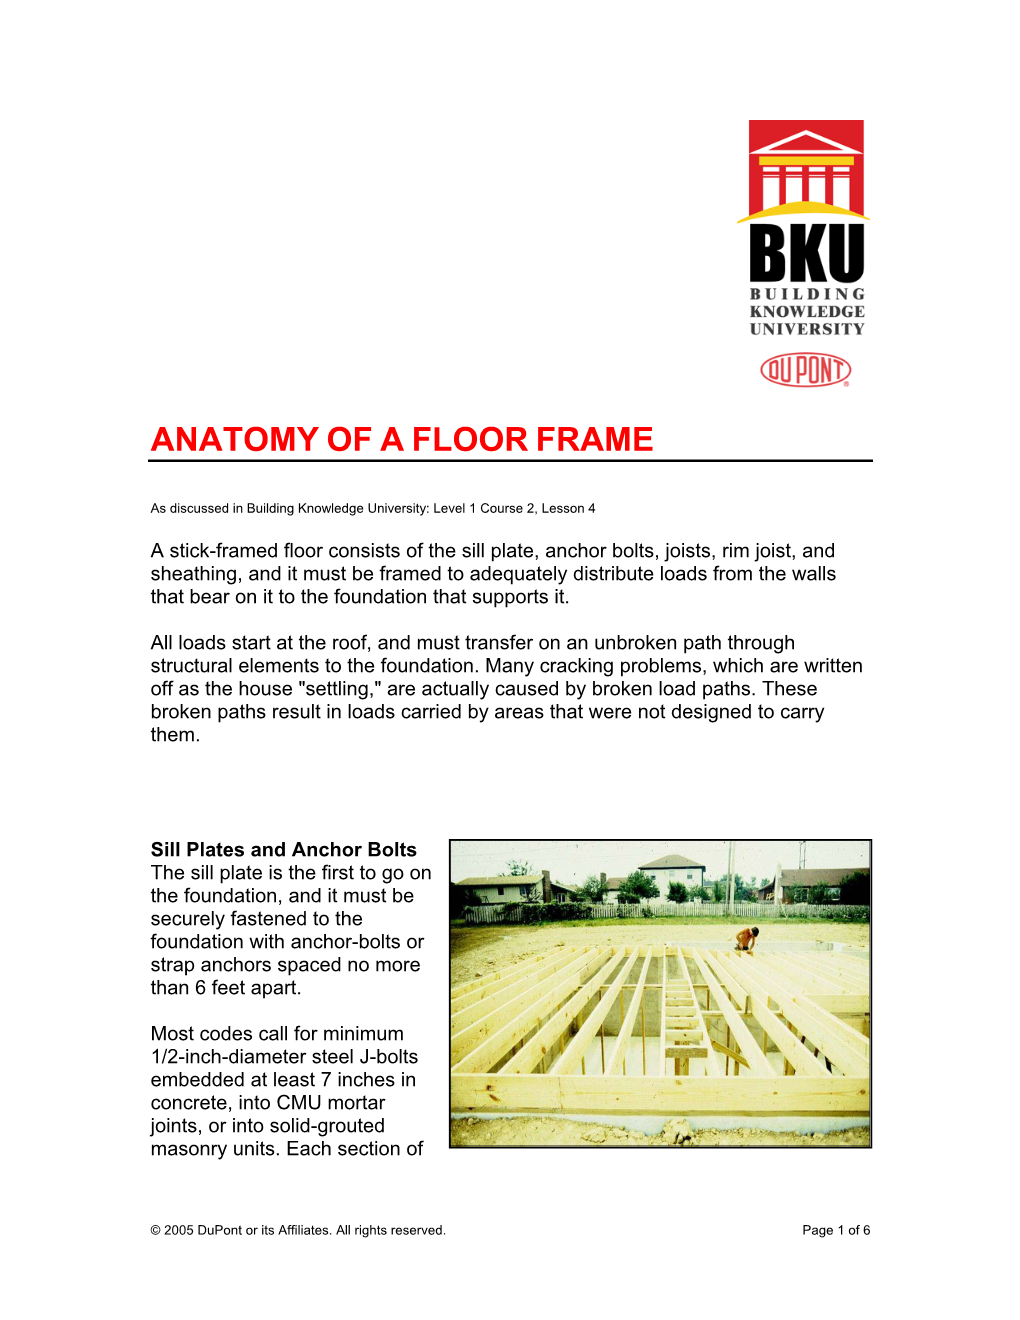 Anatomy of a Floor Frame